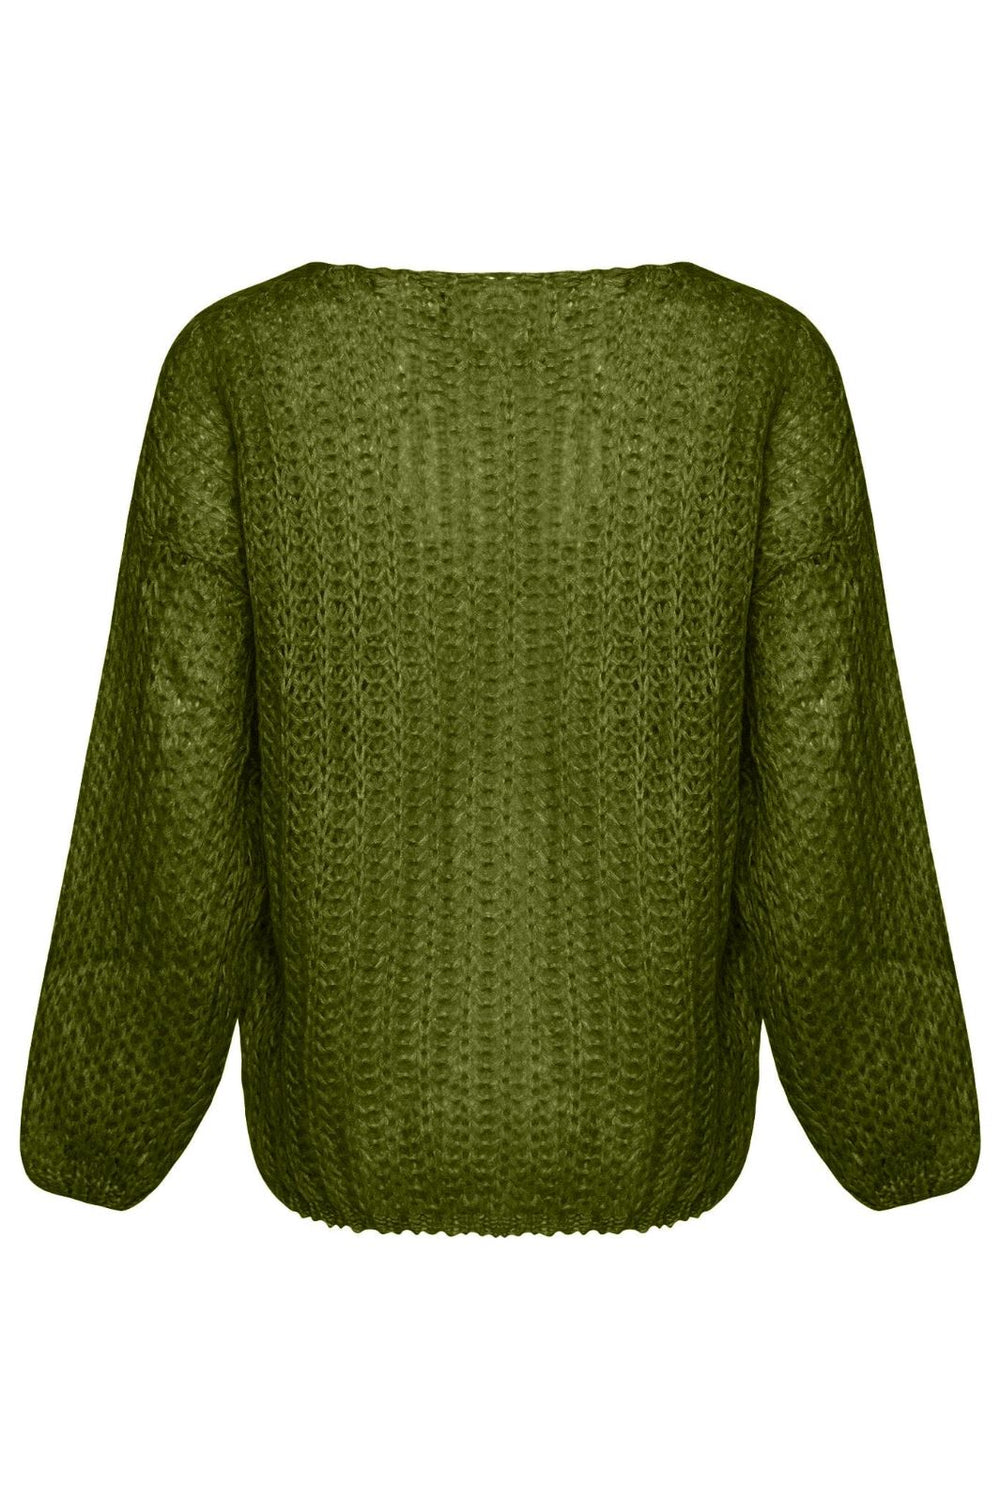 Noella - Joseph Knit Sweater - 010 Army Green Strikbluser 